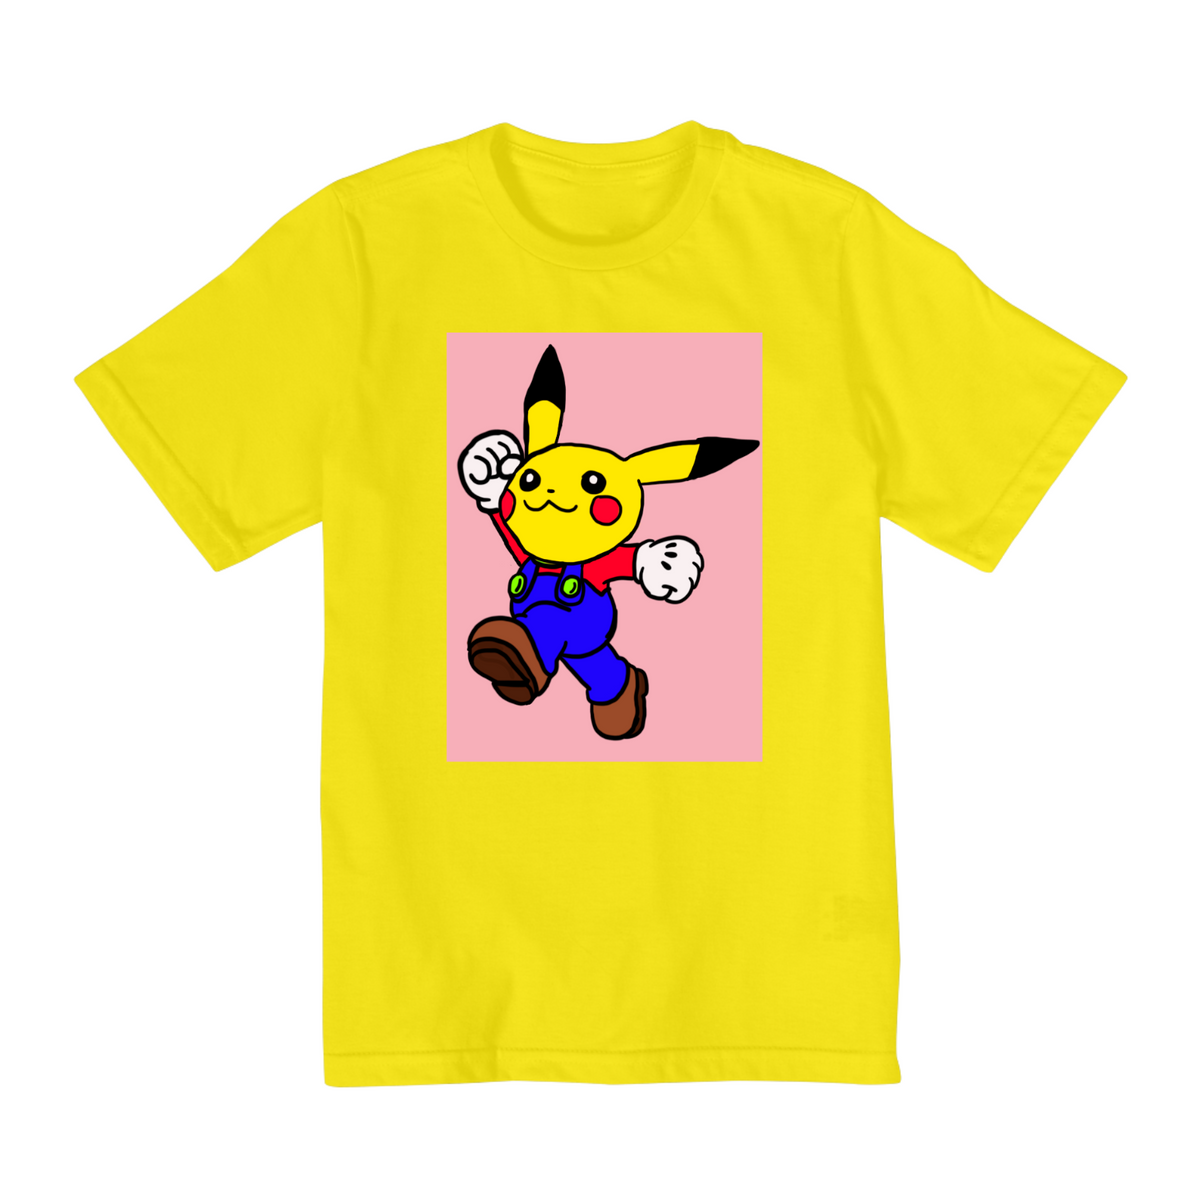 Nome do produto: Camisa Infantil Mario-Pikachu